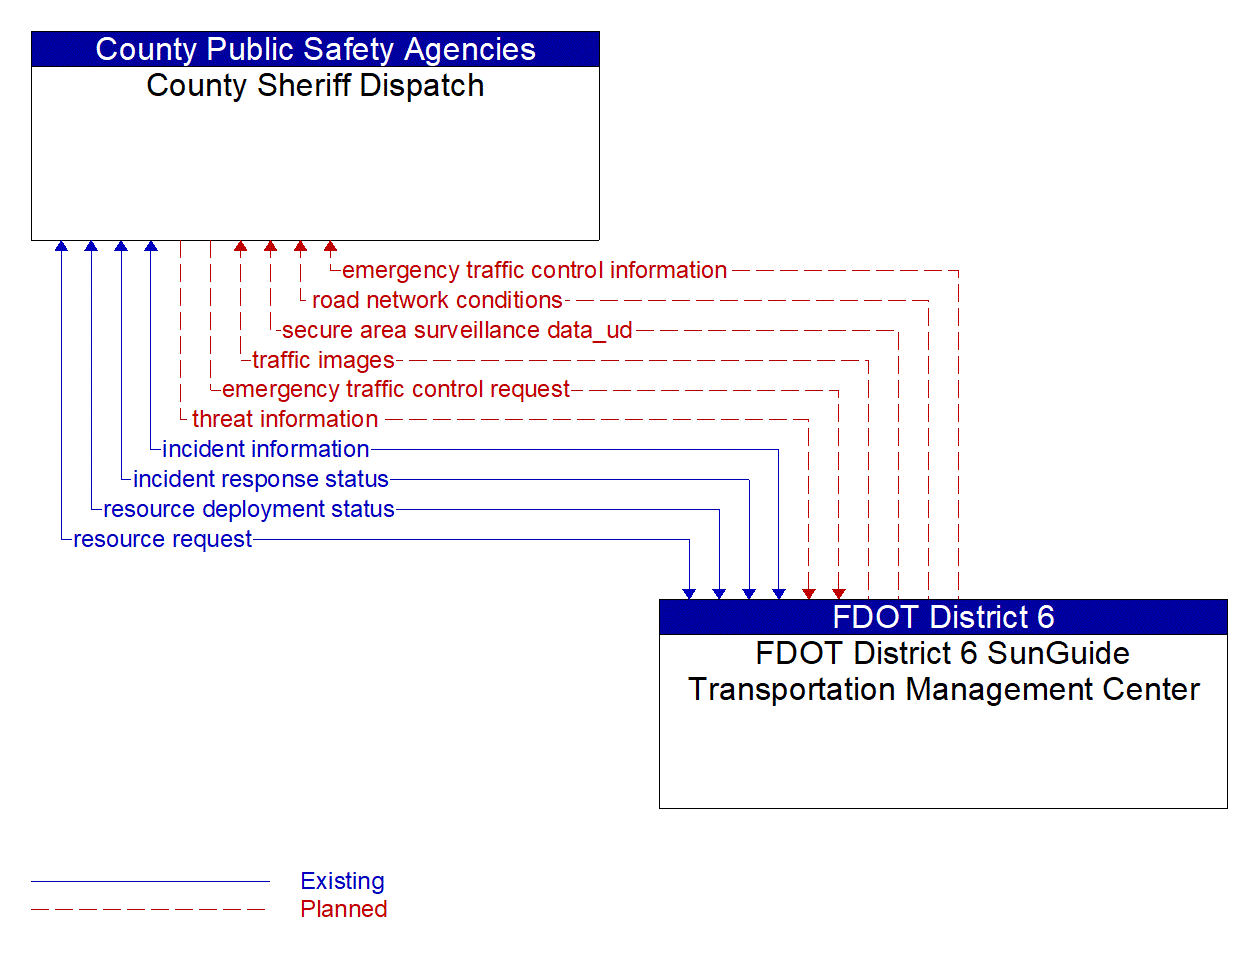 Architecture Flow Diagram: FDOT District 6 SunGuide Transportation Management Center <--> County Sheriff Dispatch